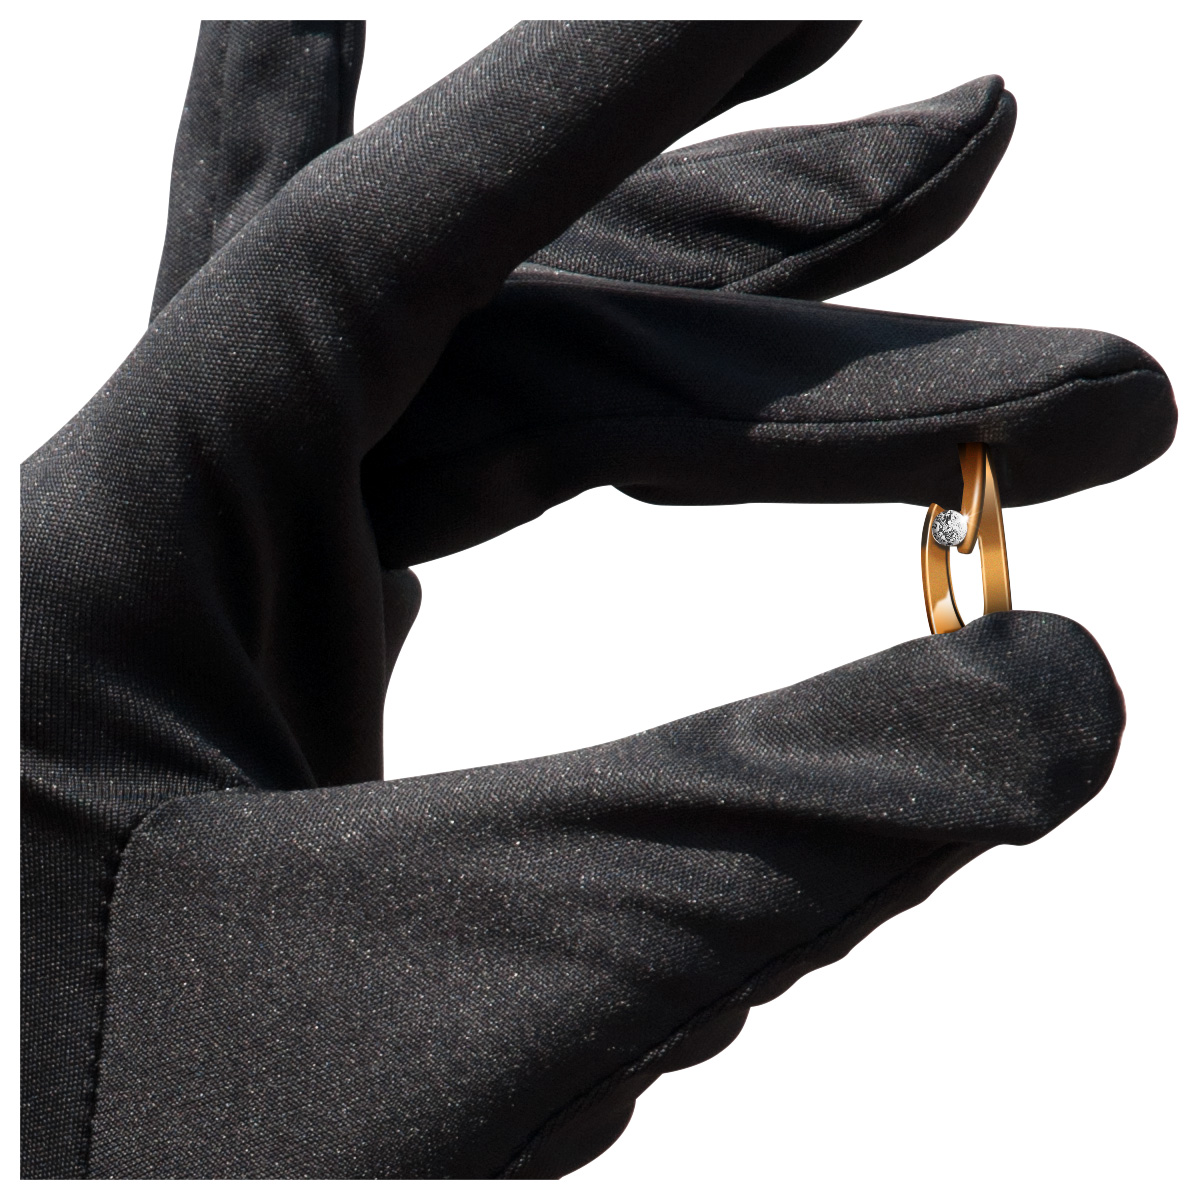 Mikrofaser Handschuh-Paar Haute Couture, schwarz, Größe XXL
